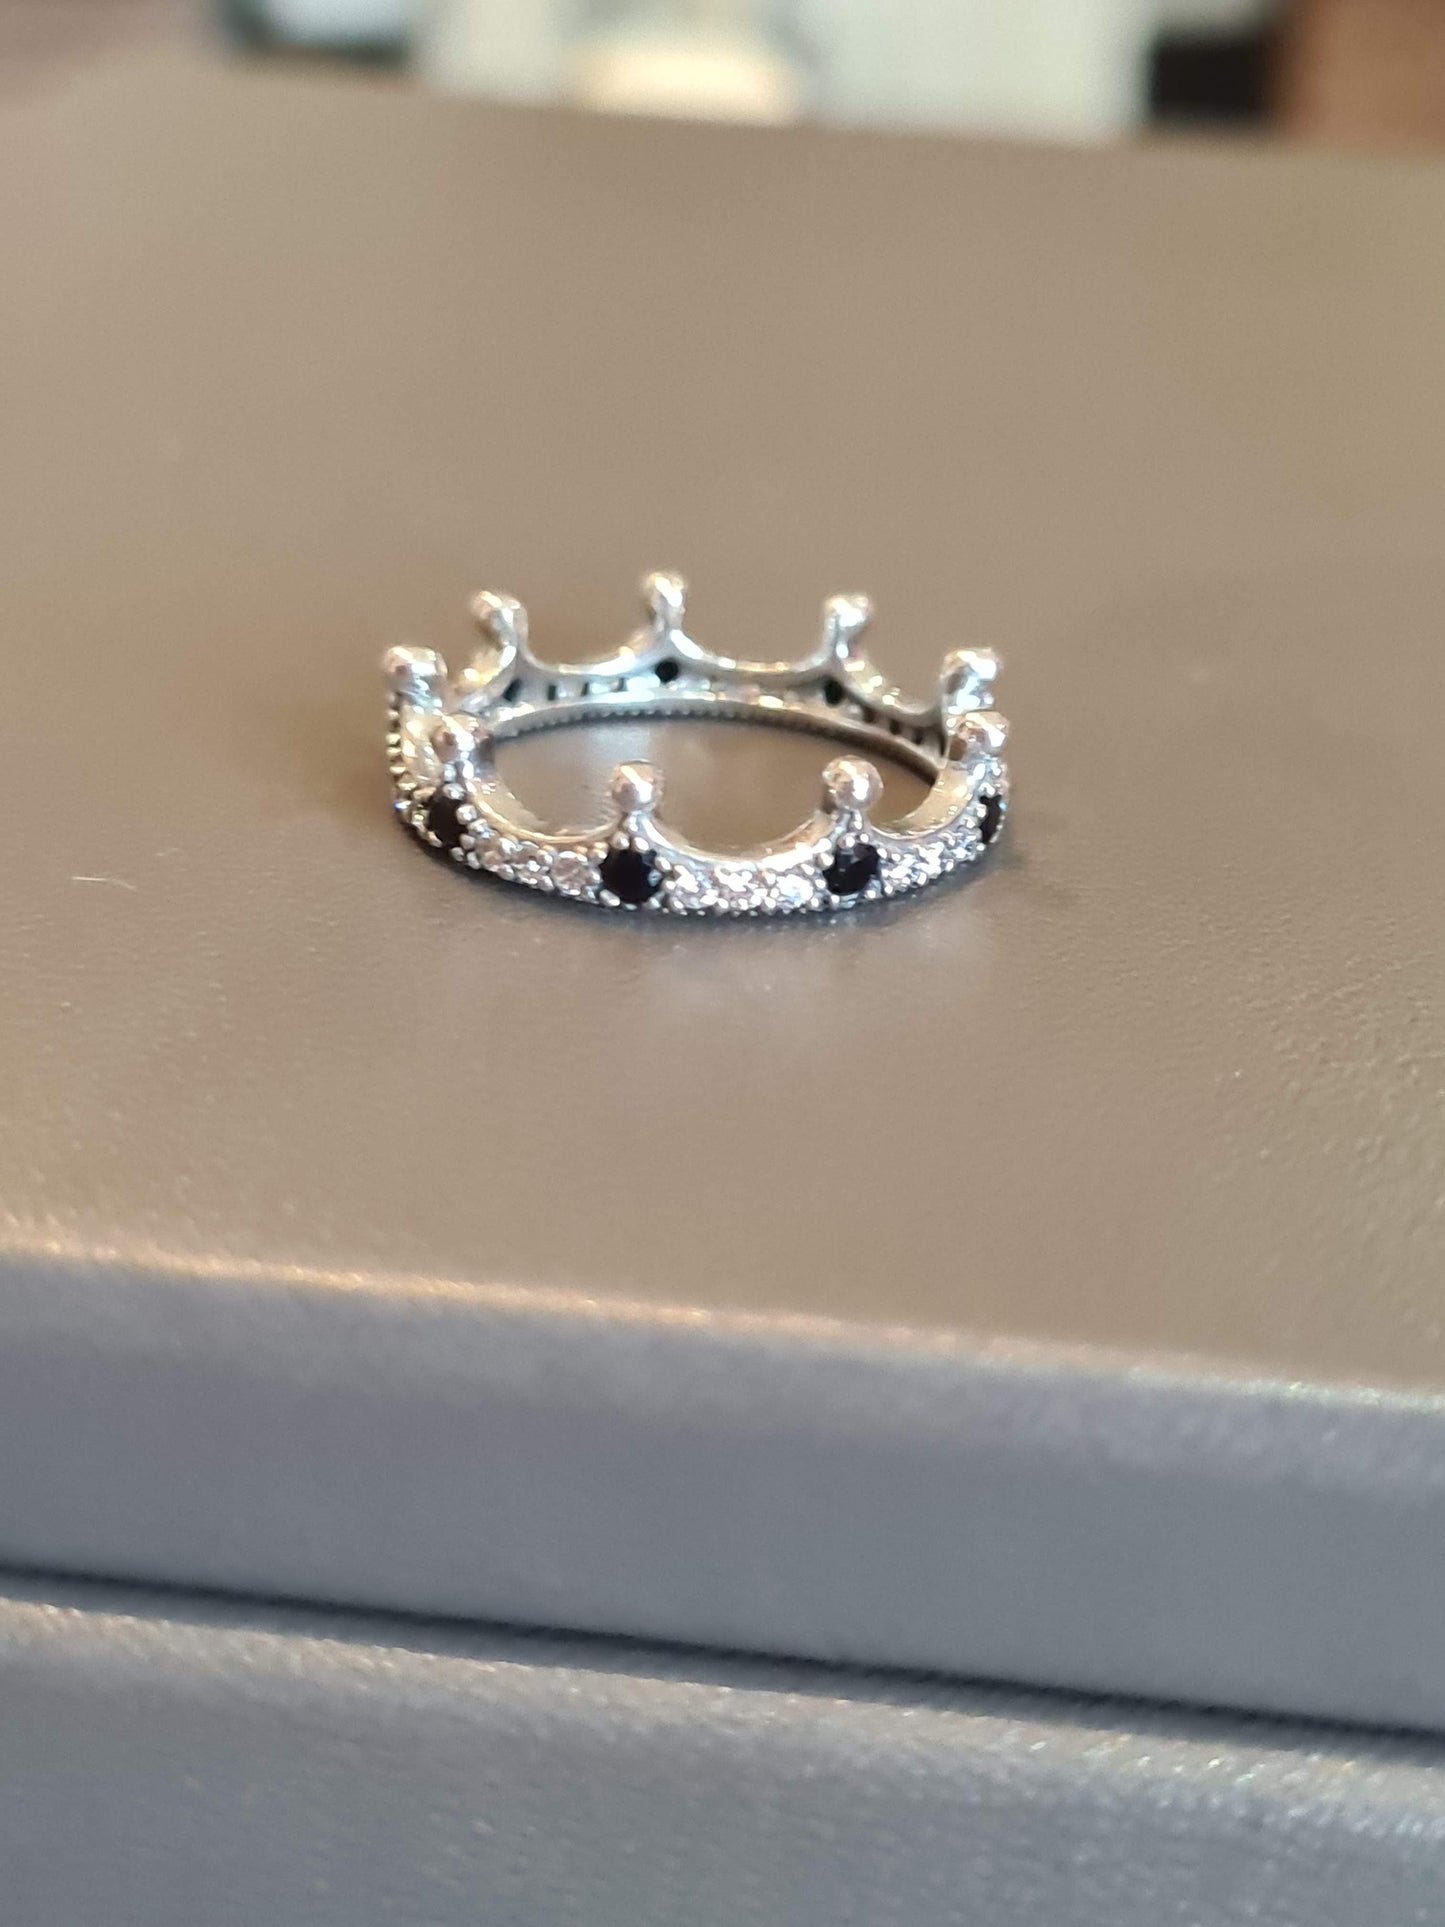 Genuine Pandora Pave Spiky Crown Princess Edgy Ring With Black CZ